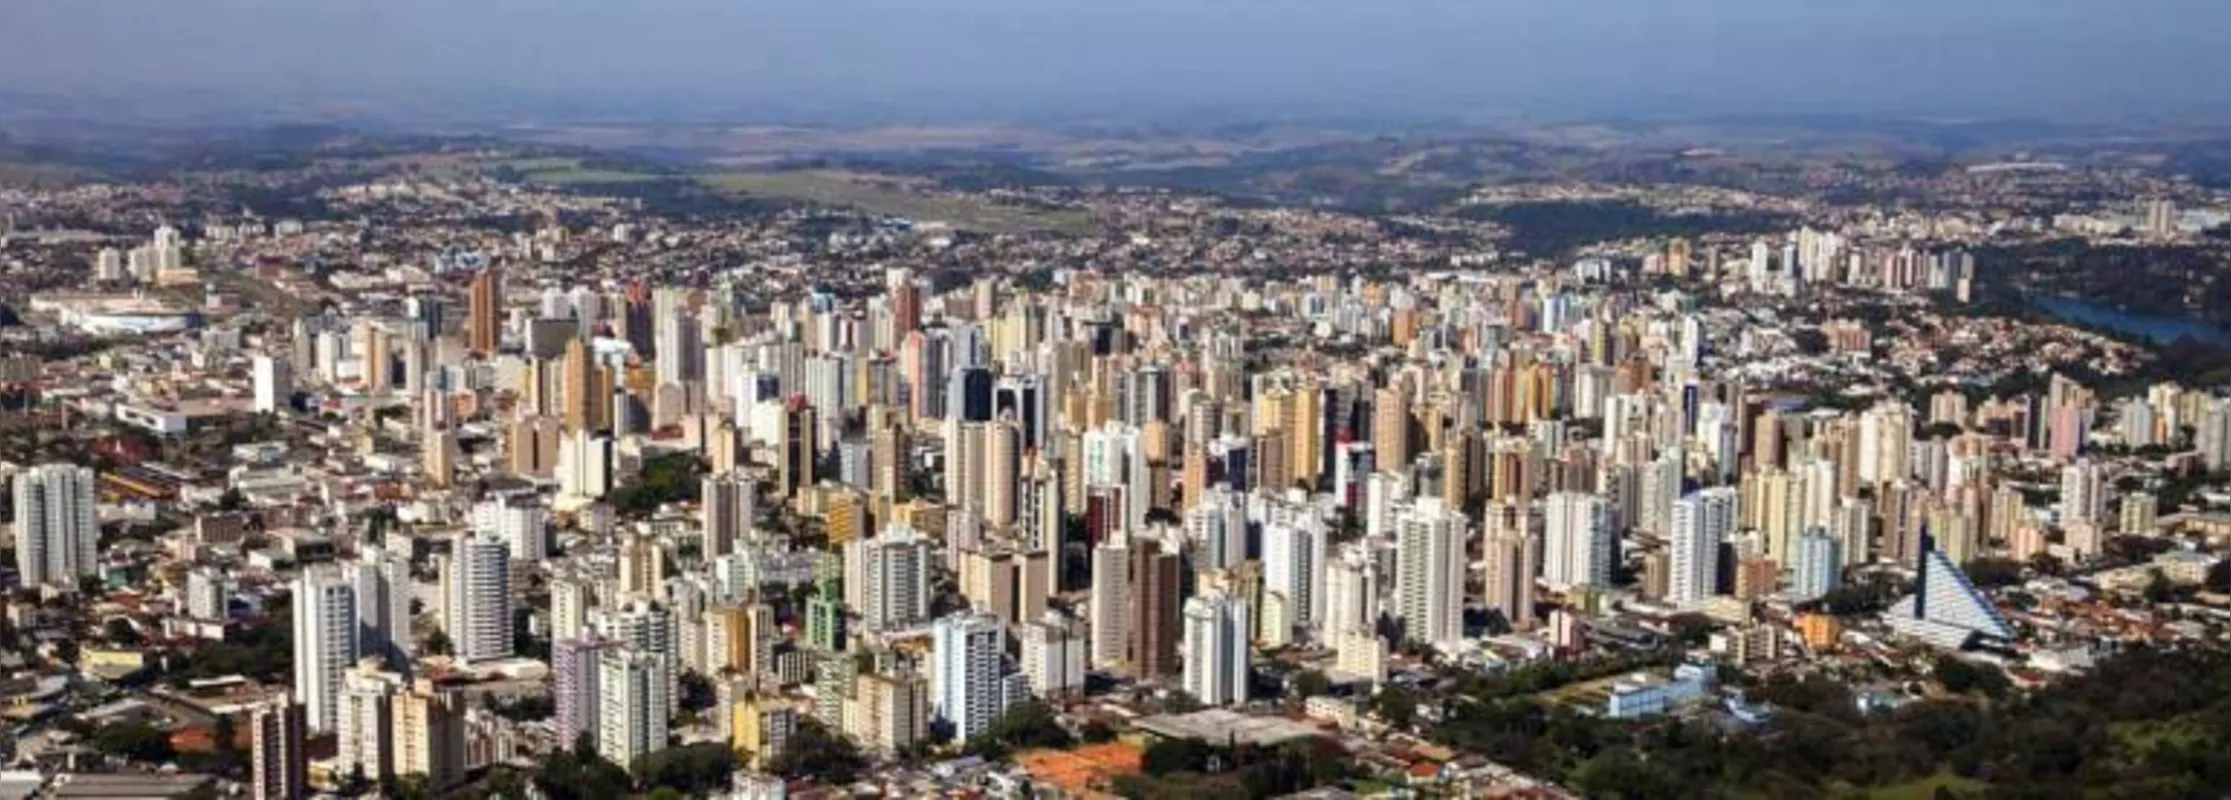 O Índice Firjan de Desenvolvimento Municipal, elaborado pela Federação das Indústrias do Estado do Rio de Janeiro é sustentado por três indicadores: educação, saúde e emprego e renda